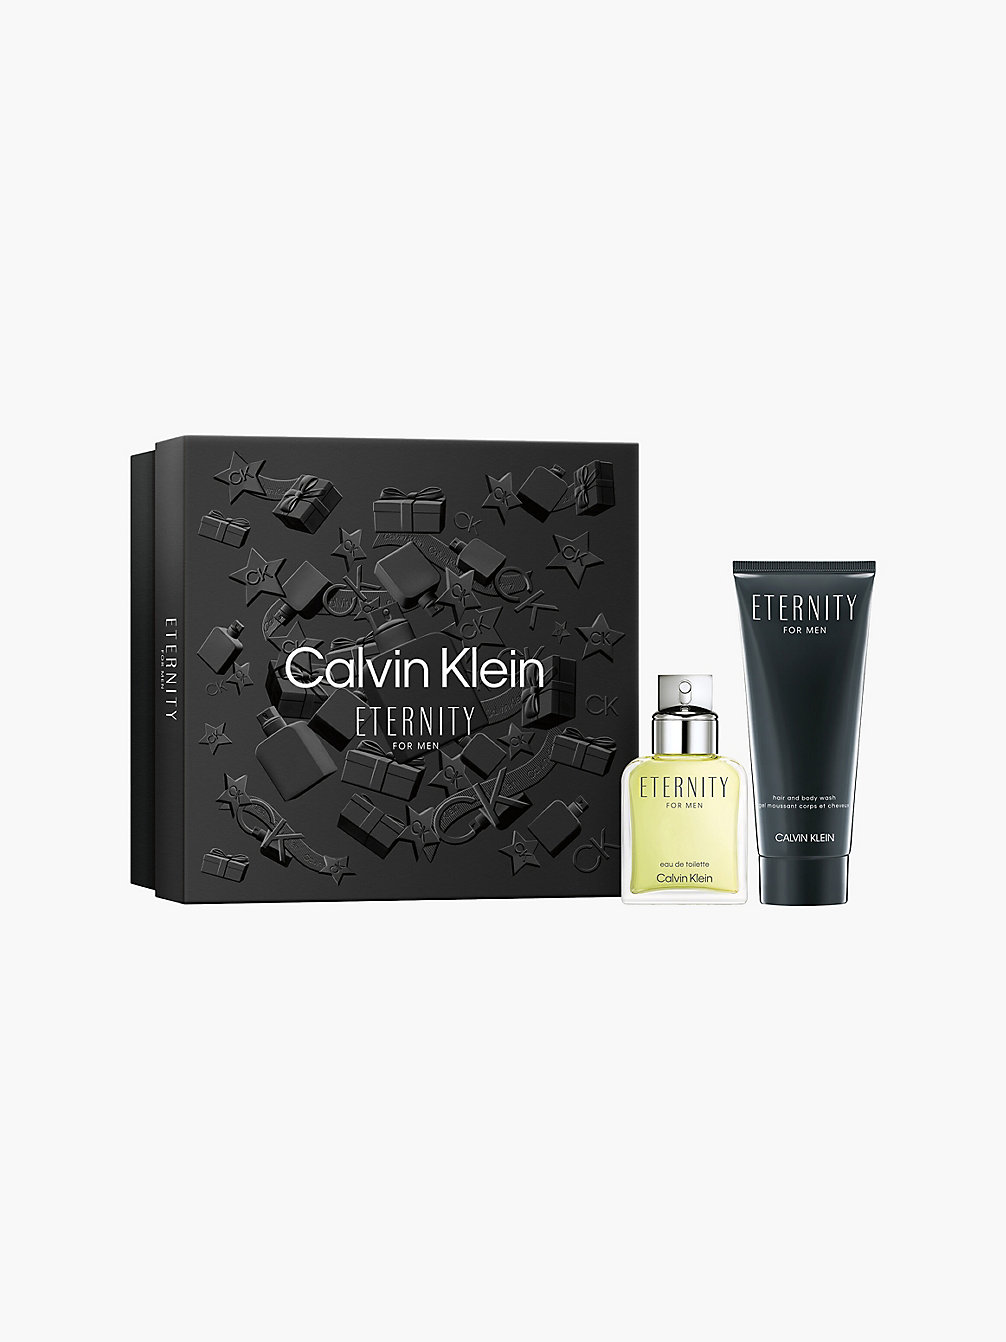 MULTI Eau De Toilette Eternity For Men Set Regalo undefined unisex Calvin Klein